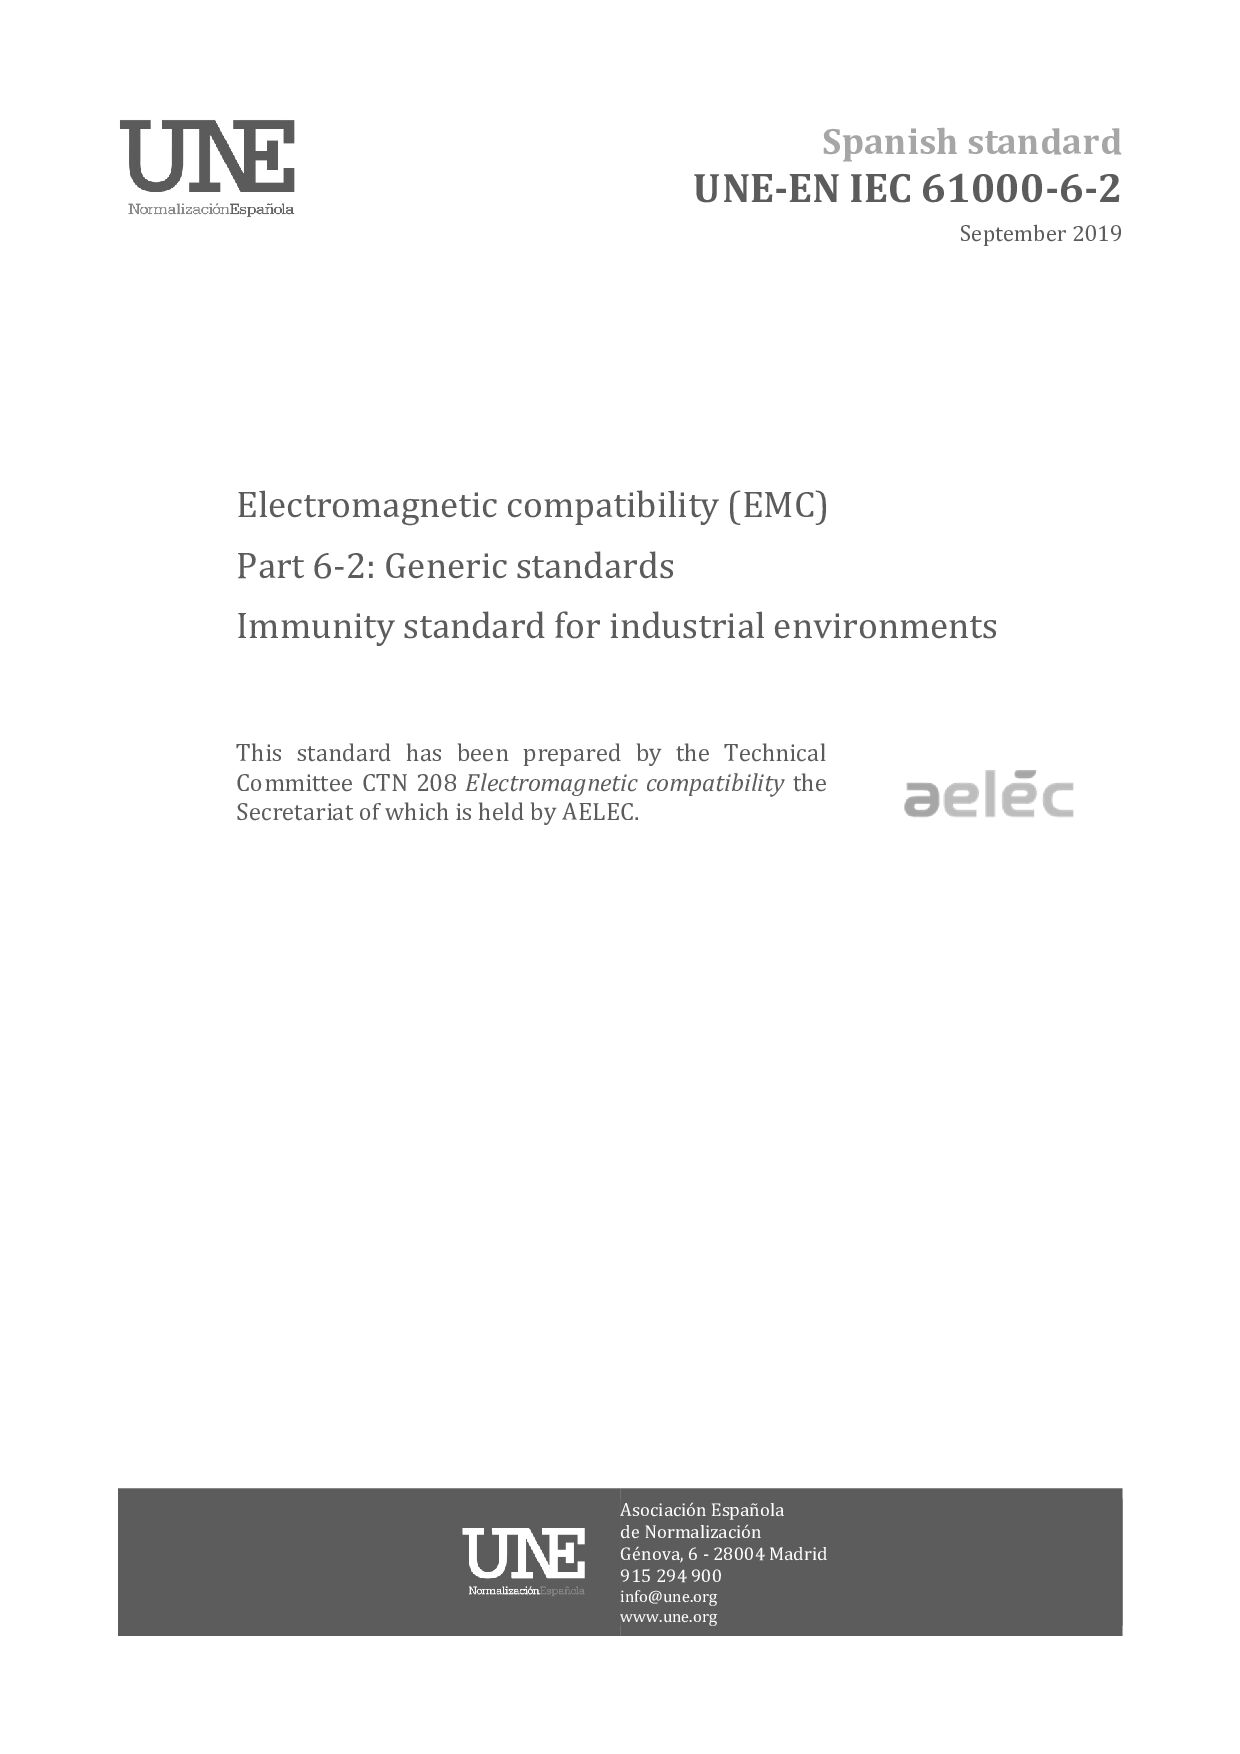 UNE-EN IEC 61000-6-2:2019封面图